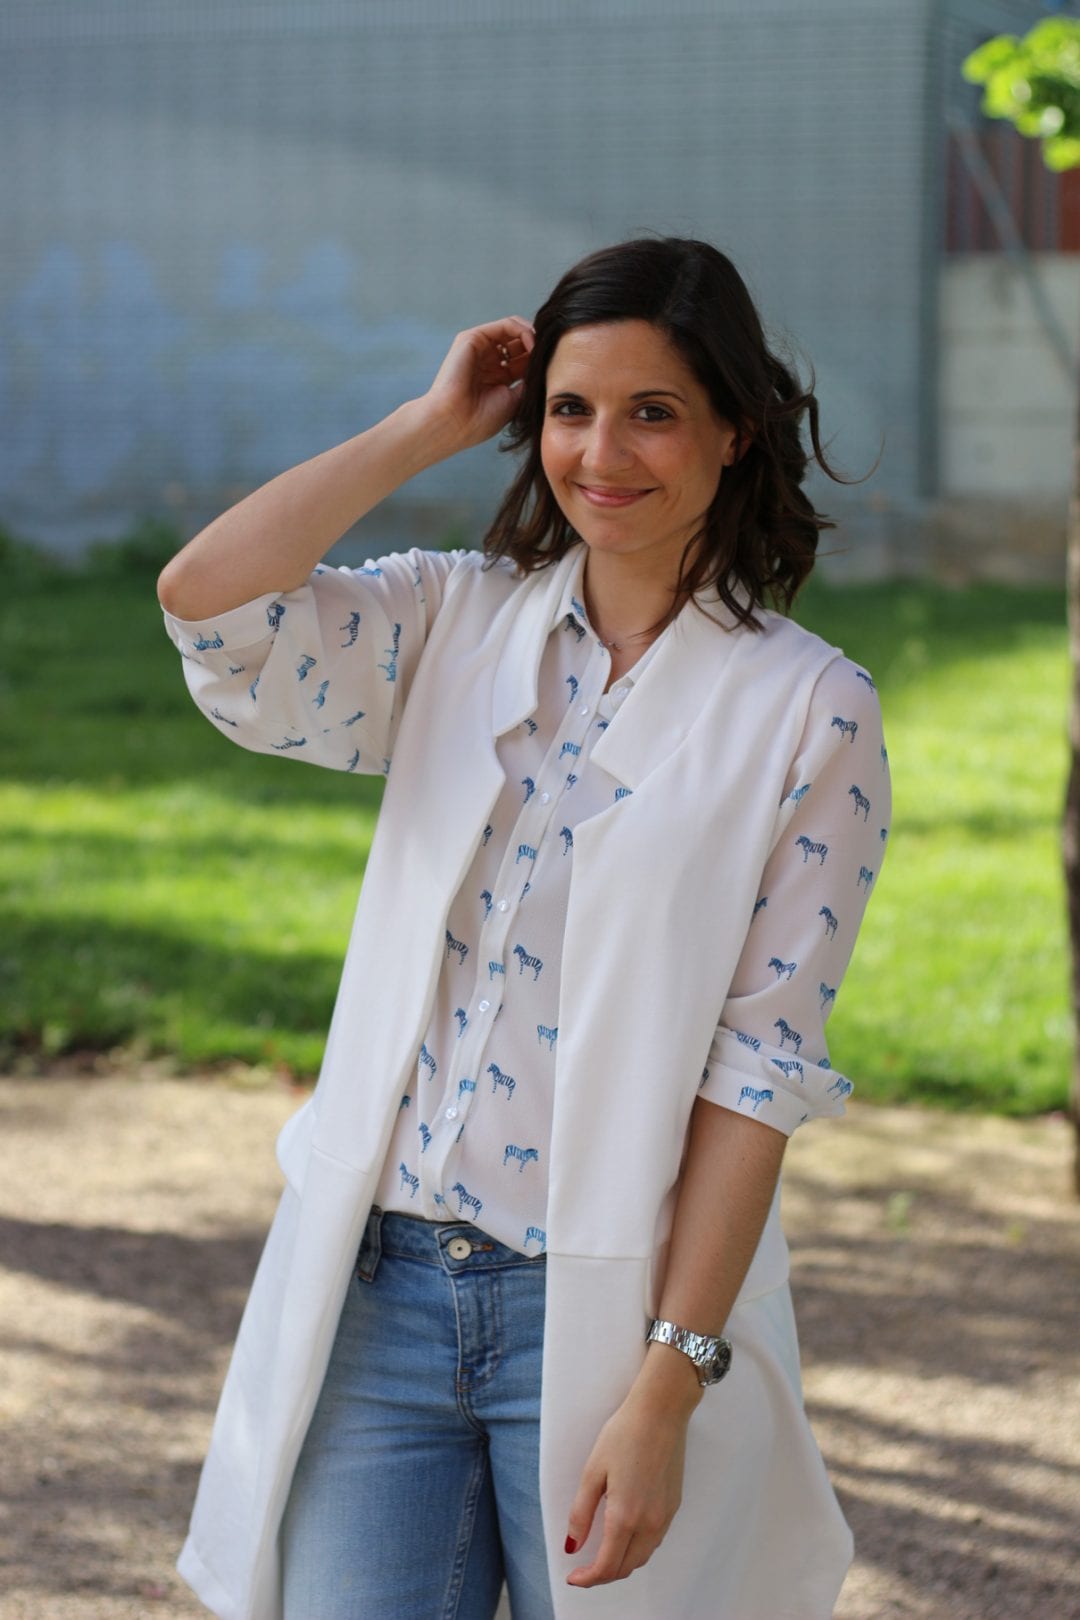 fashion blogger con look casual - chaleco blanco largo - jeans y blusa estampada